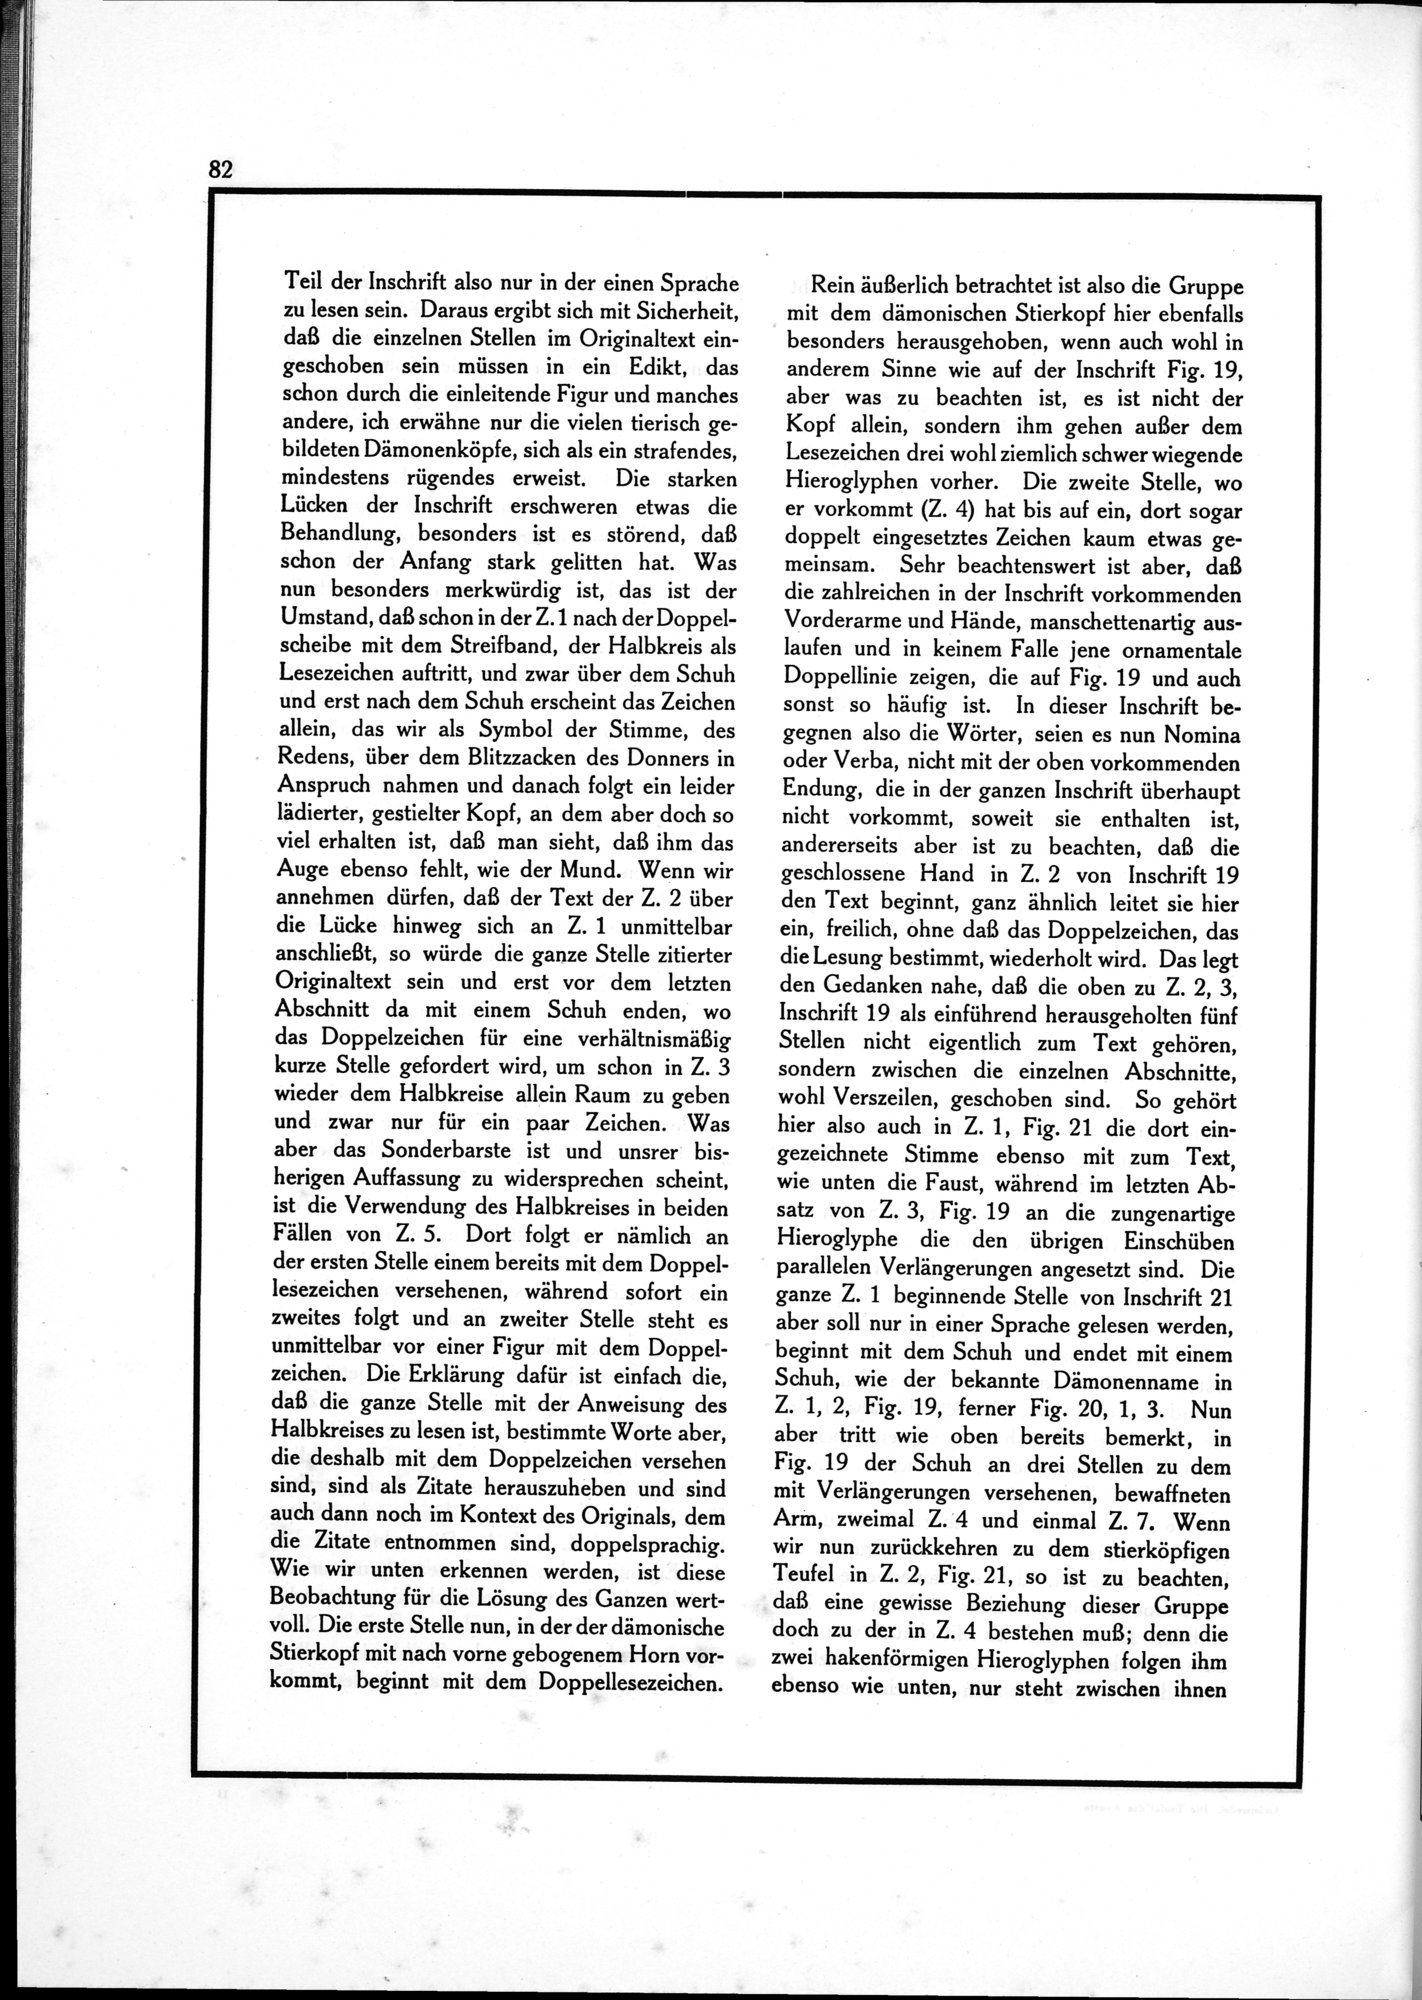 Die Teufel des Avesta und Ihre Beziehungen zur Ikonographie des Buddhismus Zentral-Asiens : vol.1 / Page 86 (Grayscale High Resolution Image)